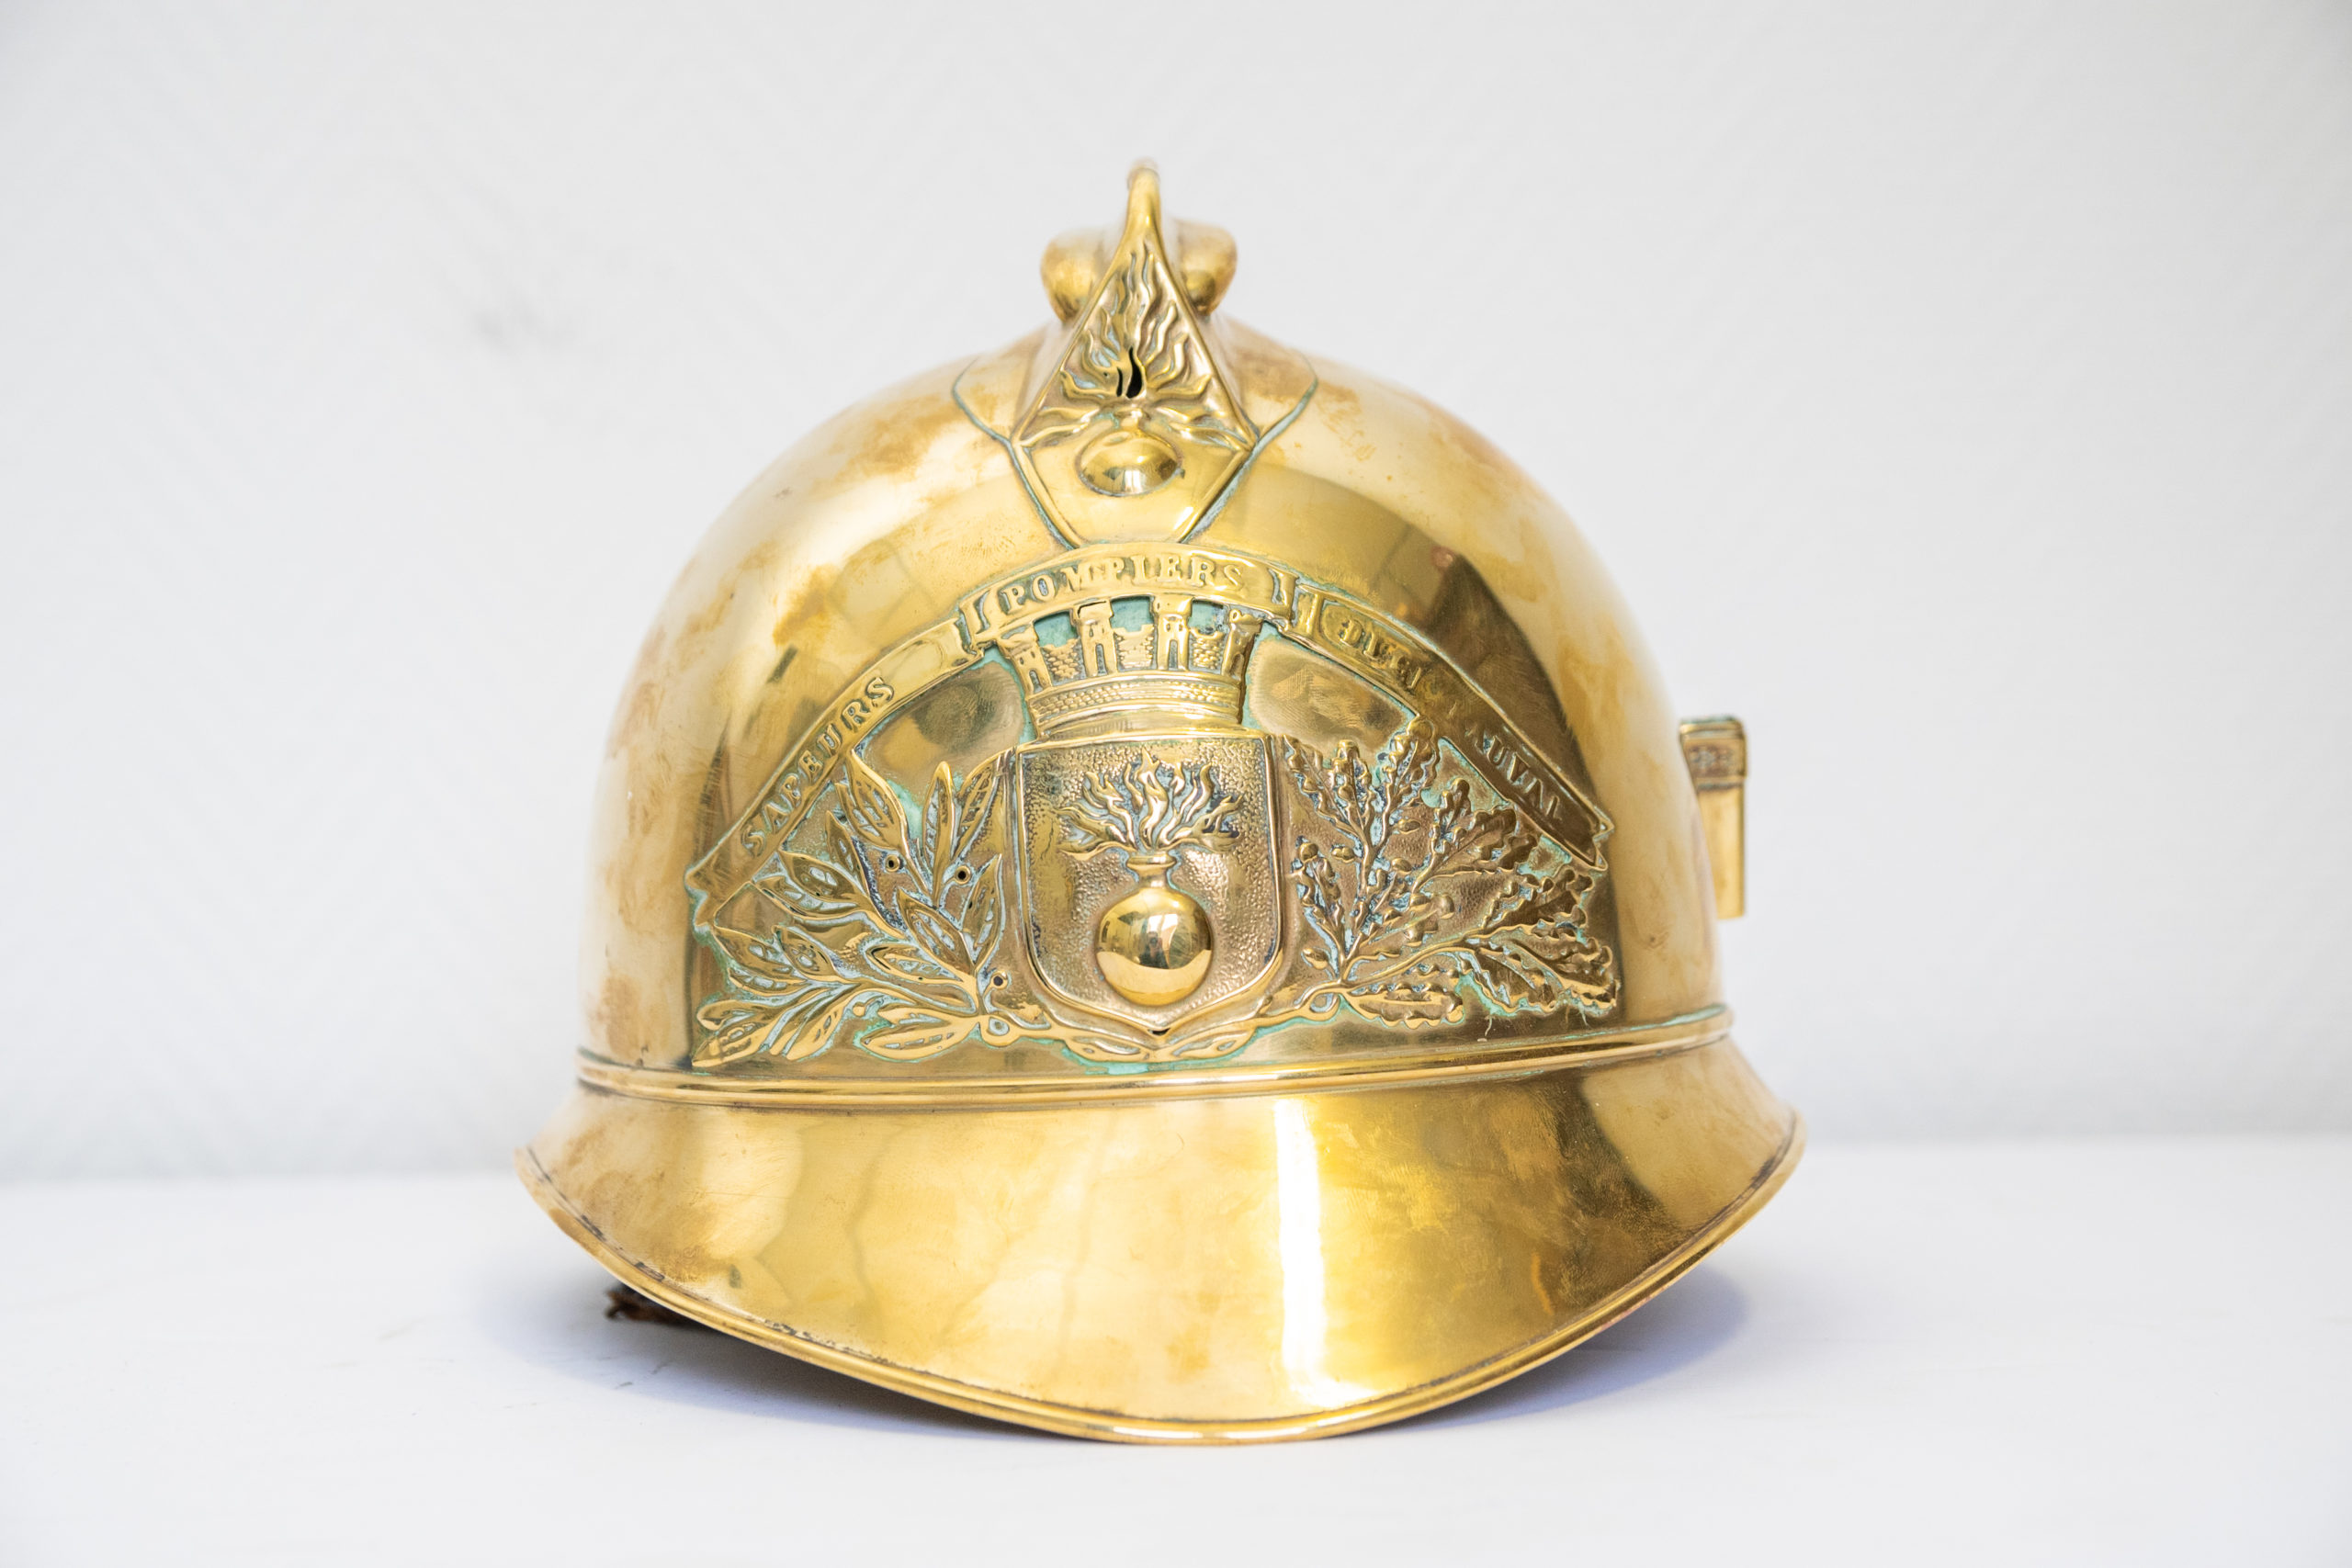 casque-sapeur-pompier-france-1880-XIXe-laiton-doré-aurore-morisse-chestret5-Antiquaire-affaireconclue1